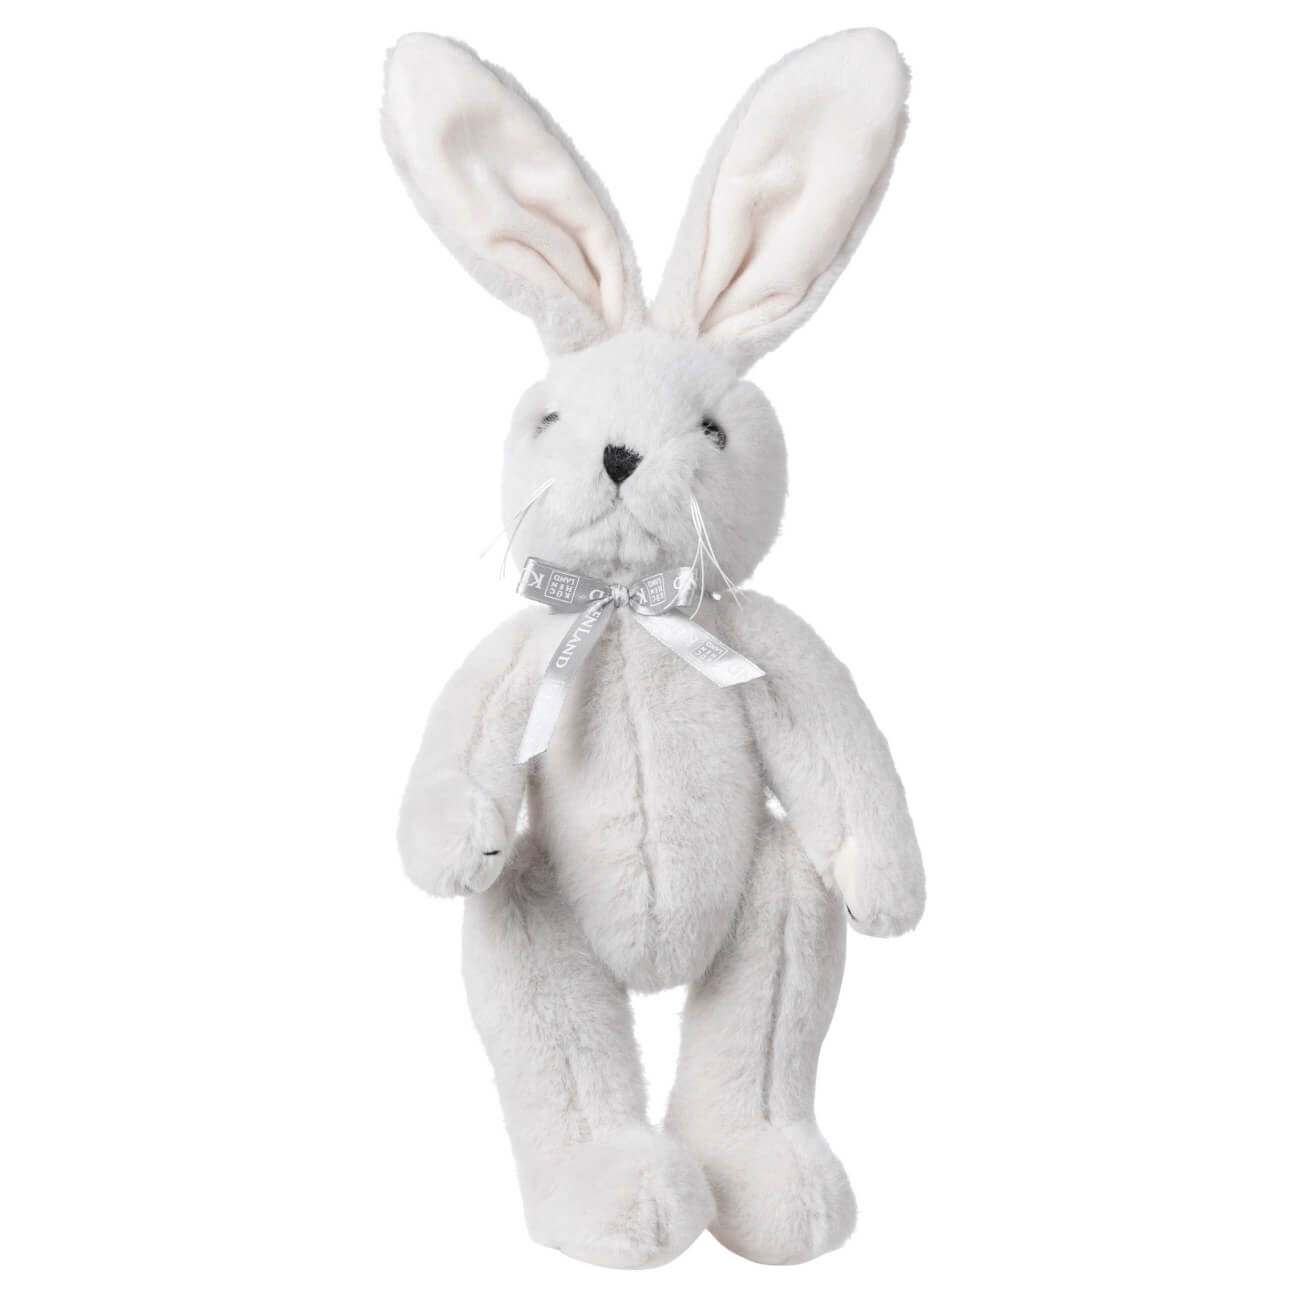 Игрушка, 30 см, мягкая, с подвижными лапами, полиэстер, светло-серая, Кролик, Rabbit toy